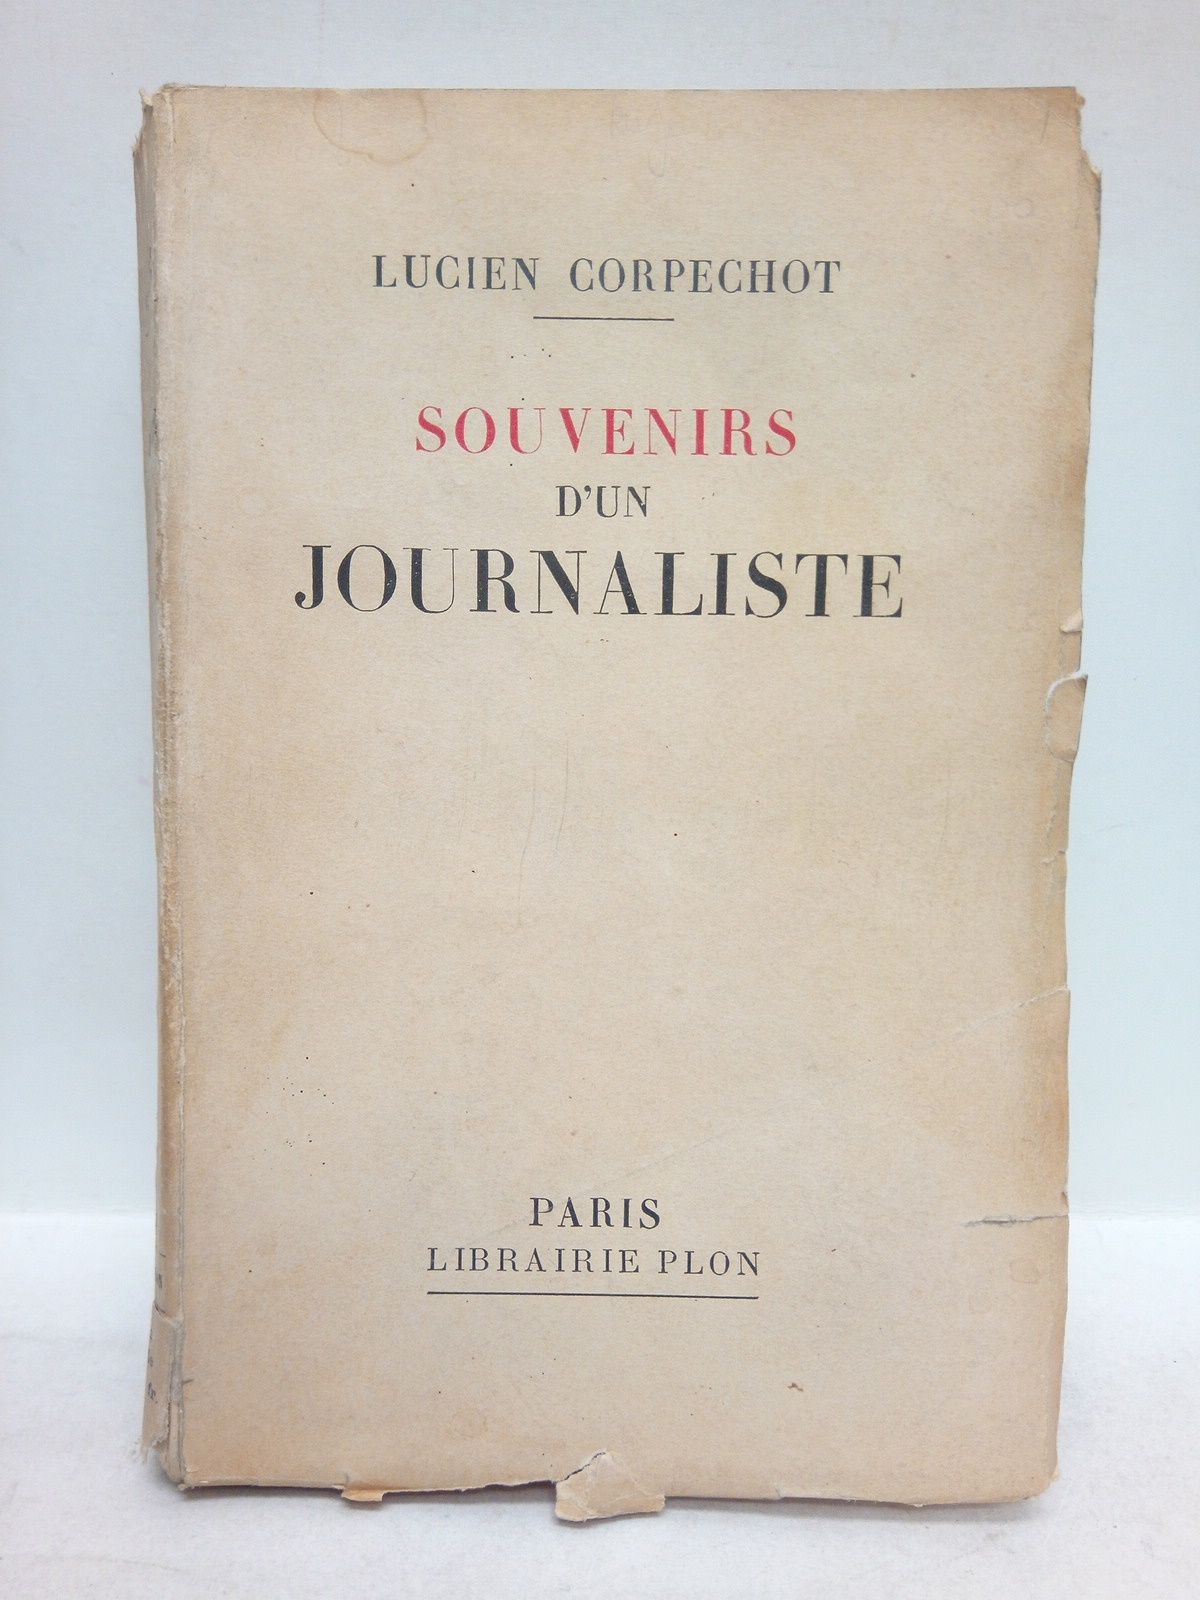 CORPECHOT, Lucien - Souvenirs d'un journaliste